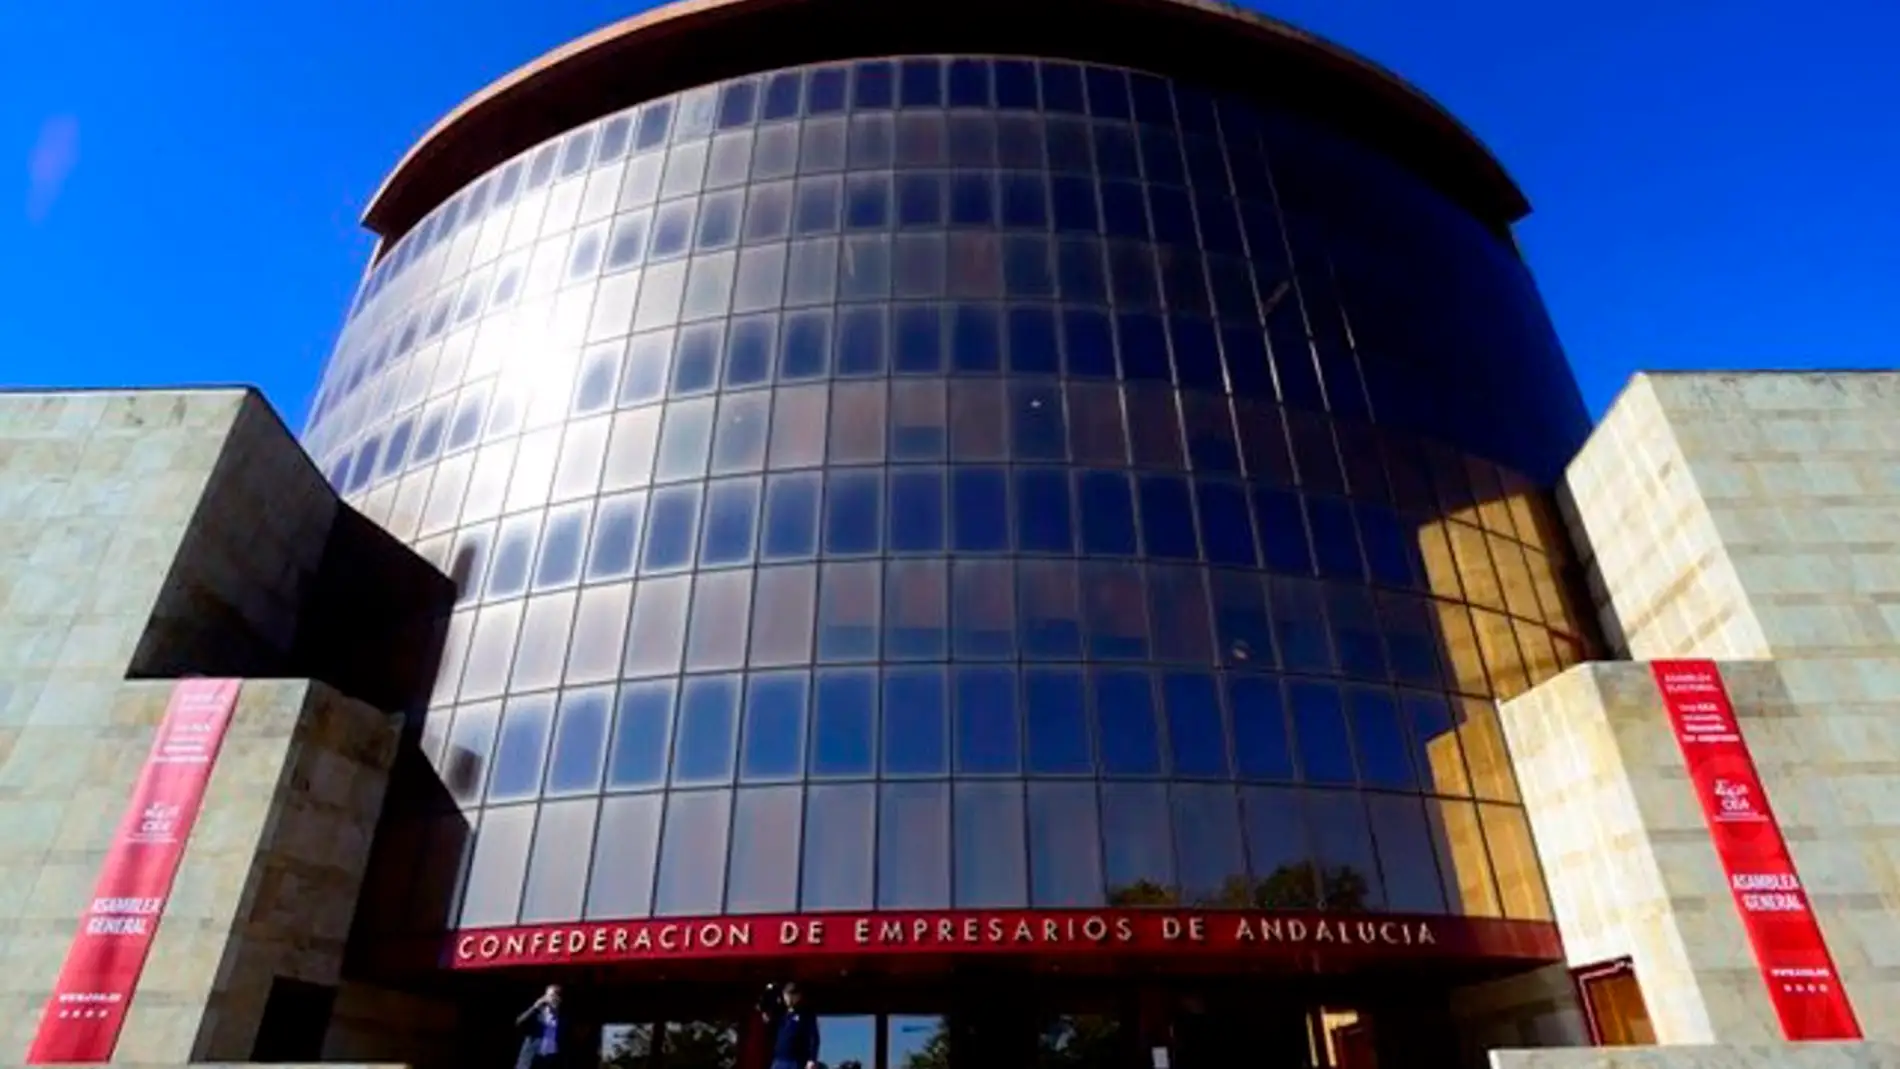 La CEA critica el "ataque" de Pedro Sánchez a los empresarios con "mensajes radicales" que traspasan "líneas rojas"